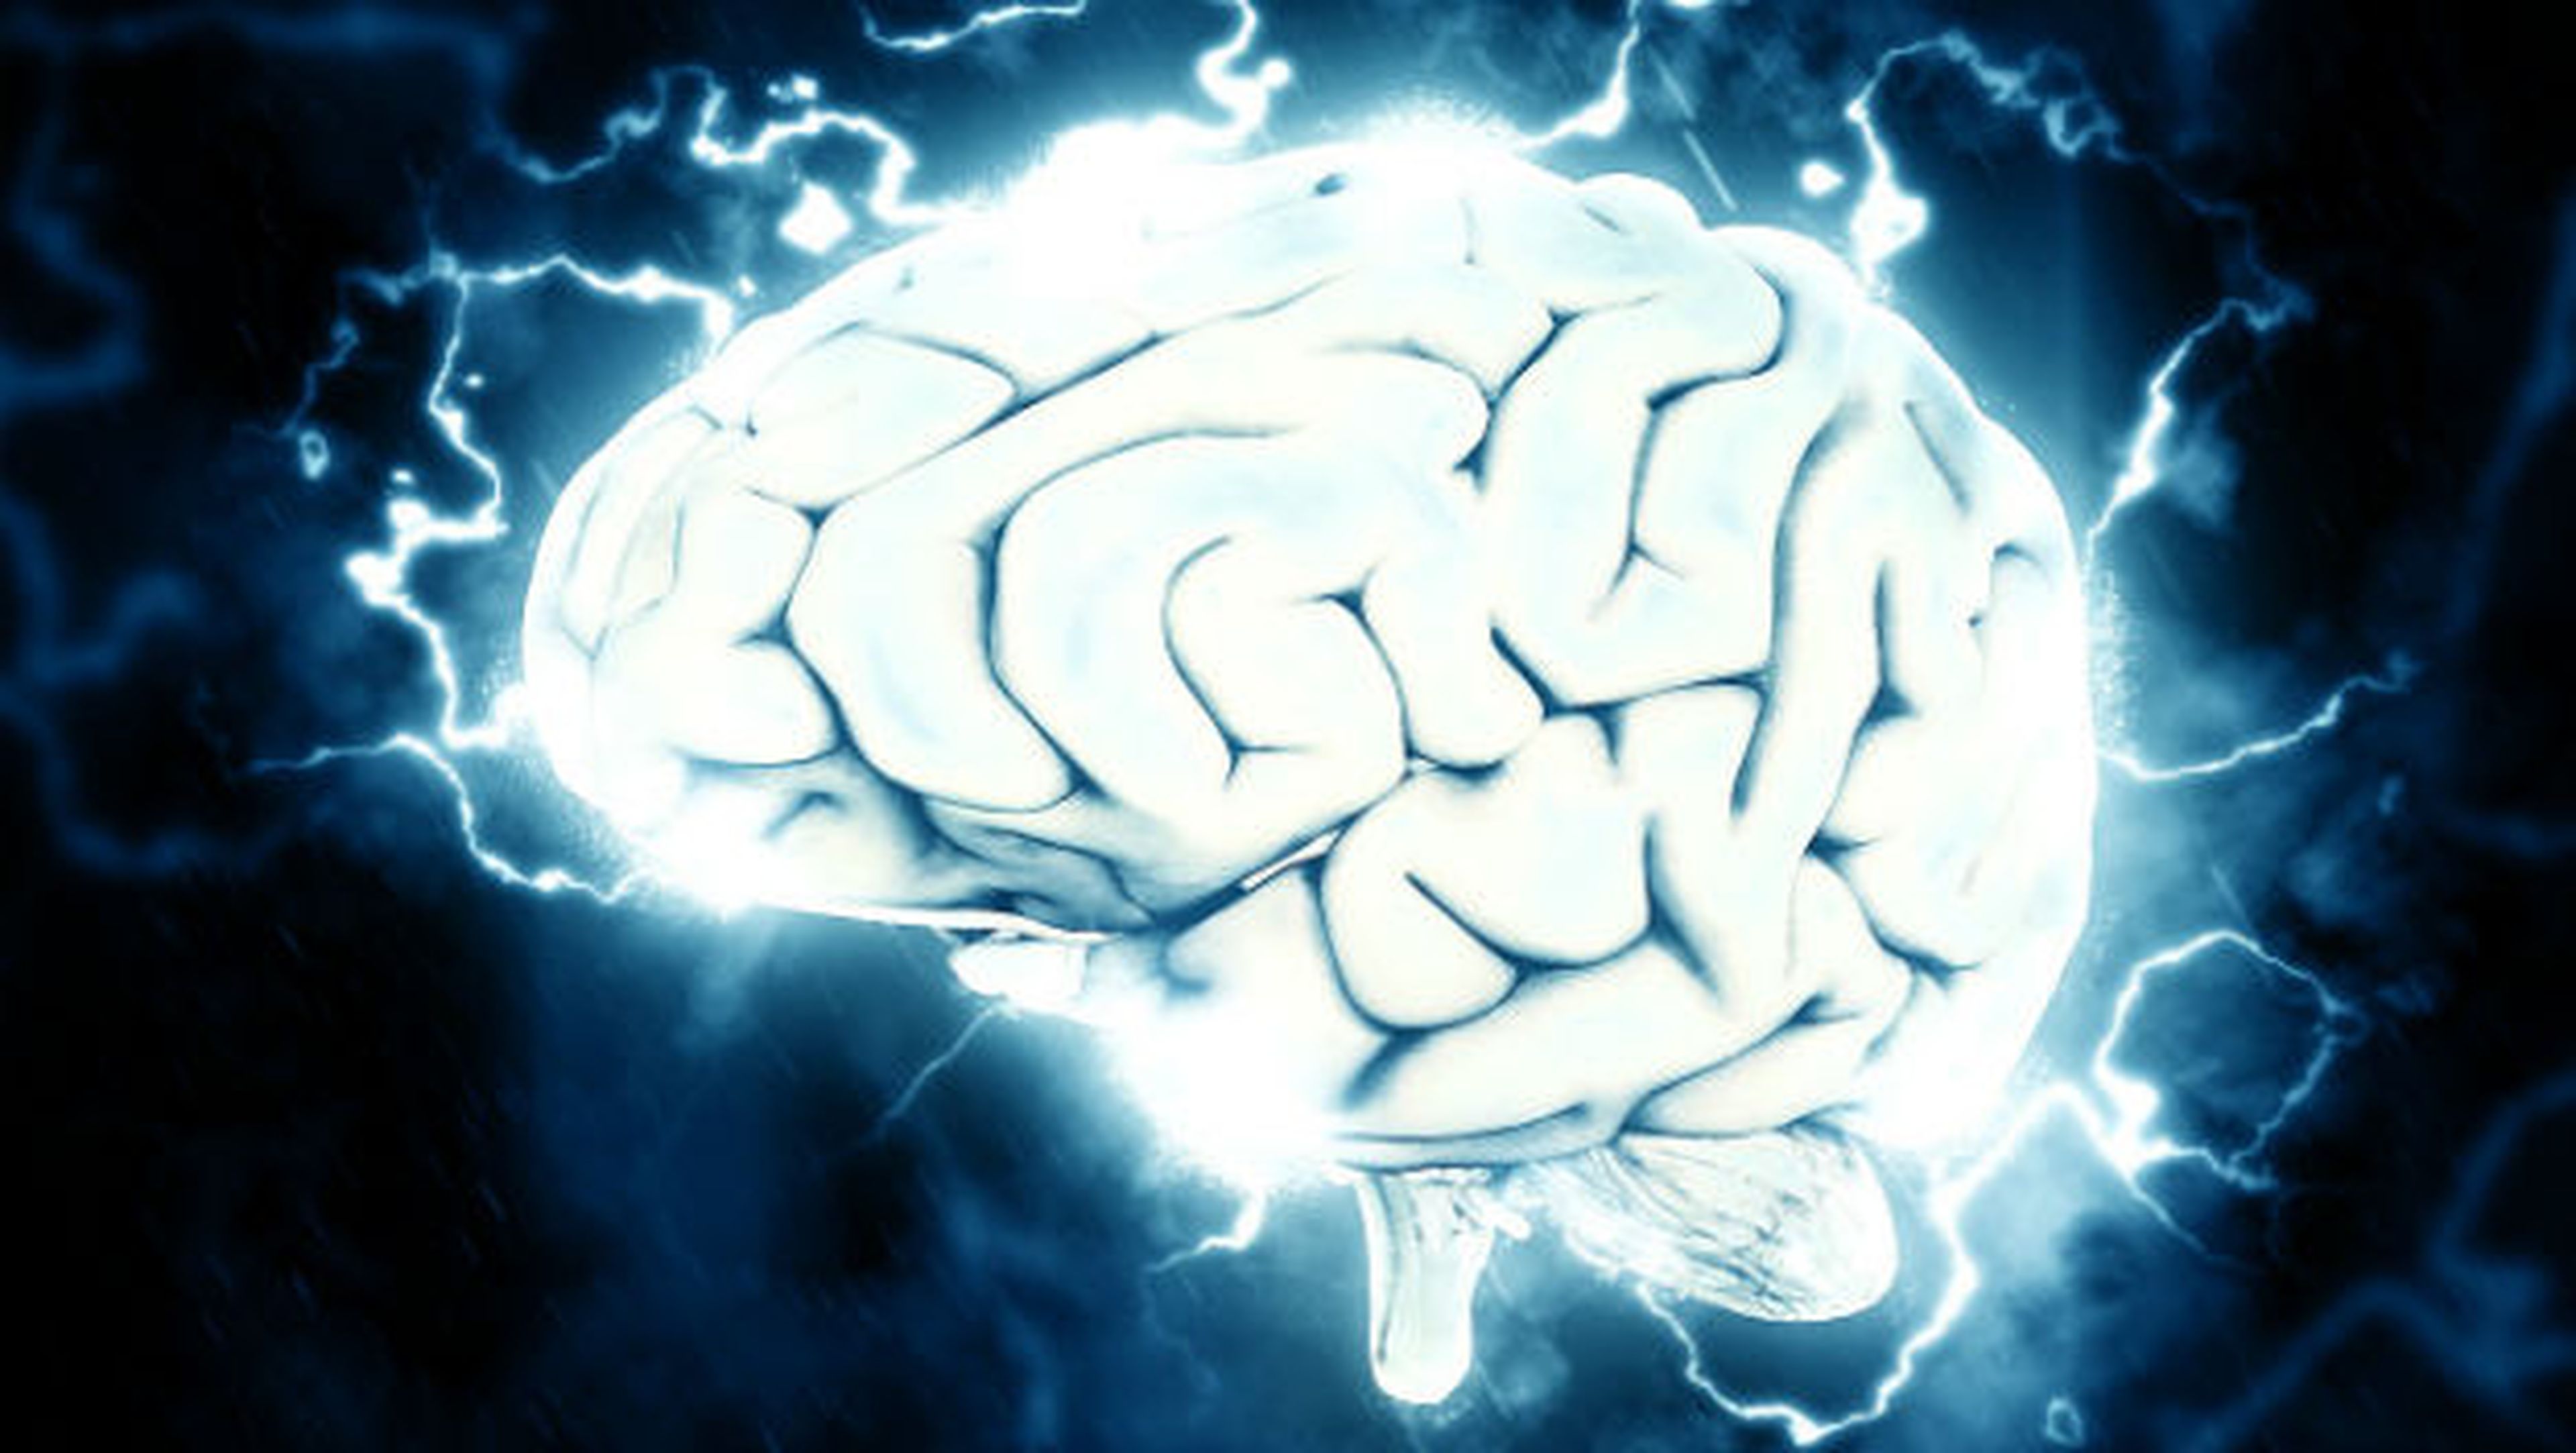 Un cerebro conectado a Internet gracias a este increíble experimento científico.